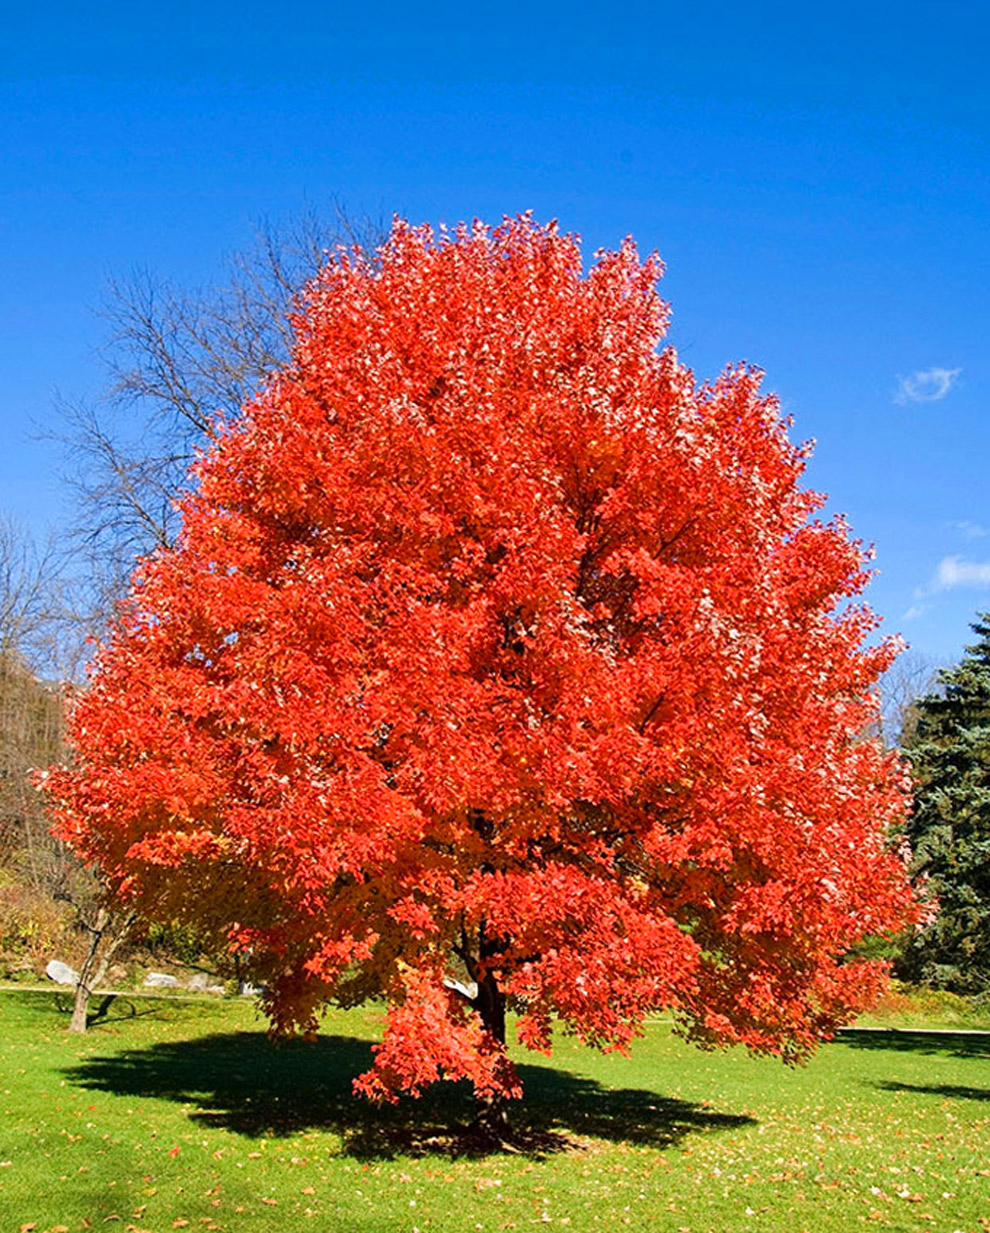 加拿大最重要的一种槭树北美糖槭